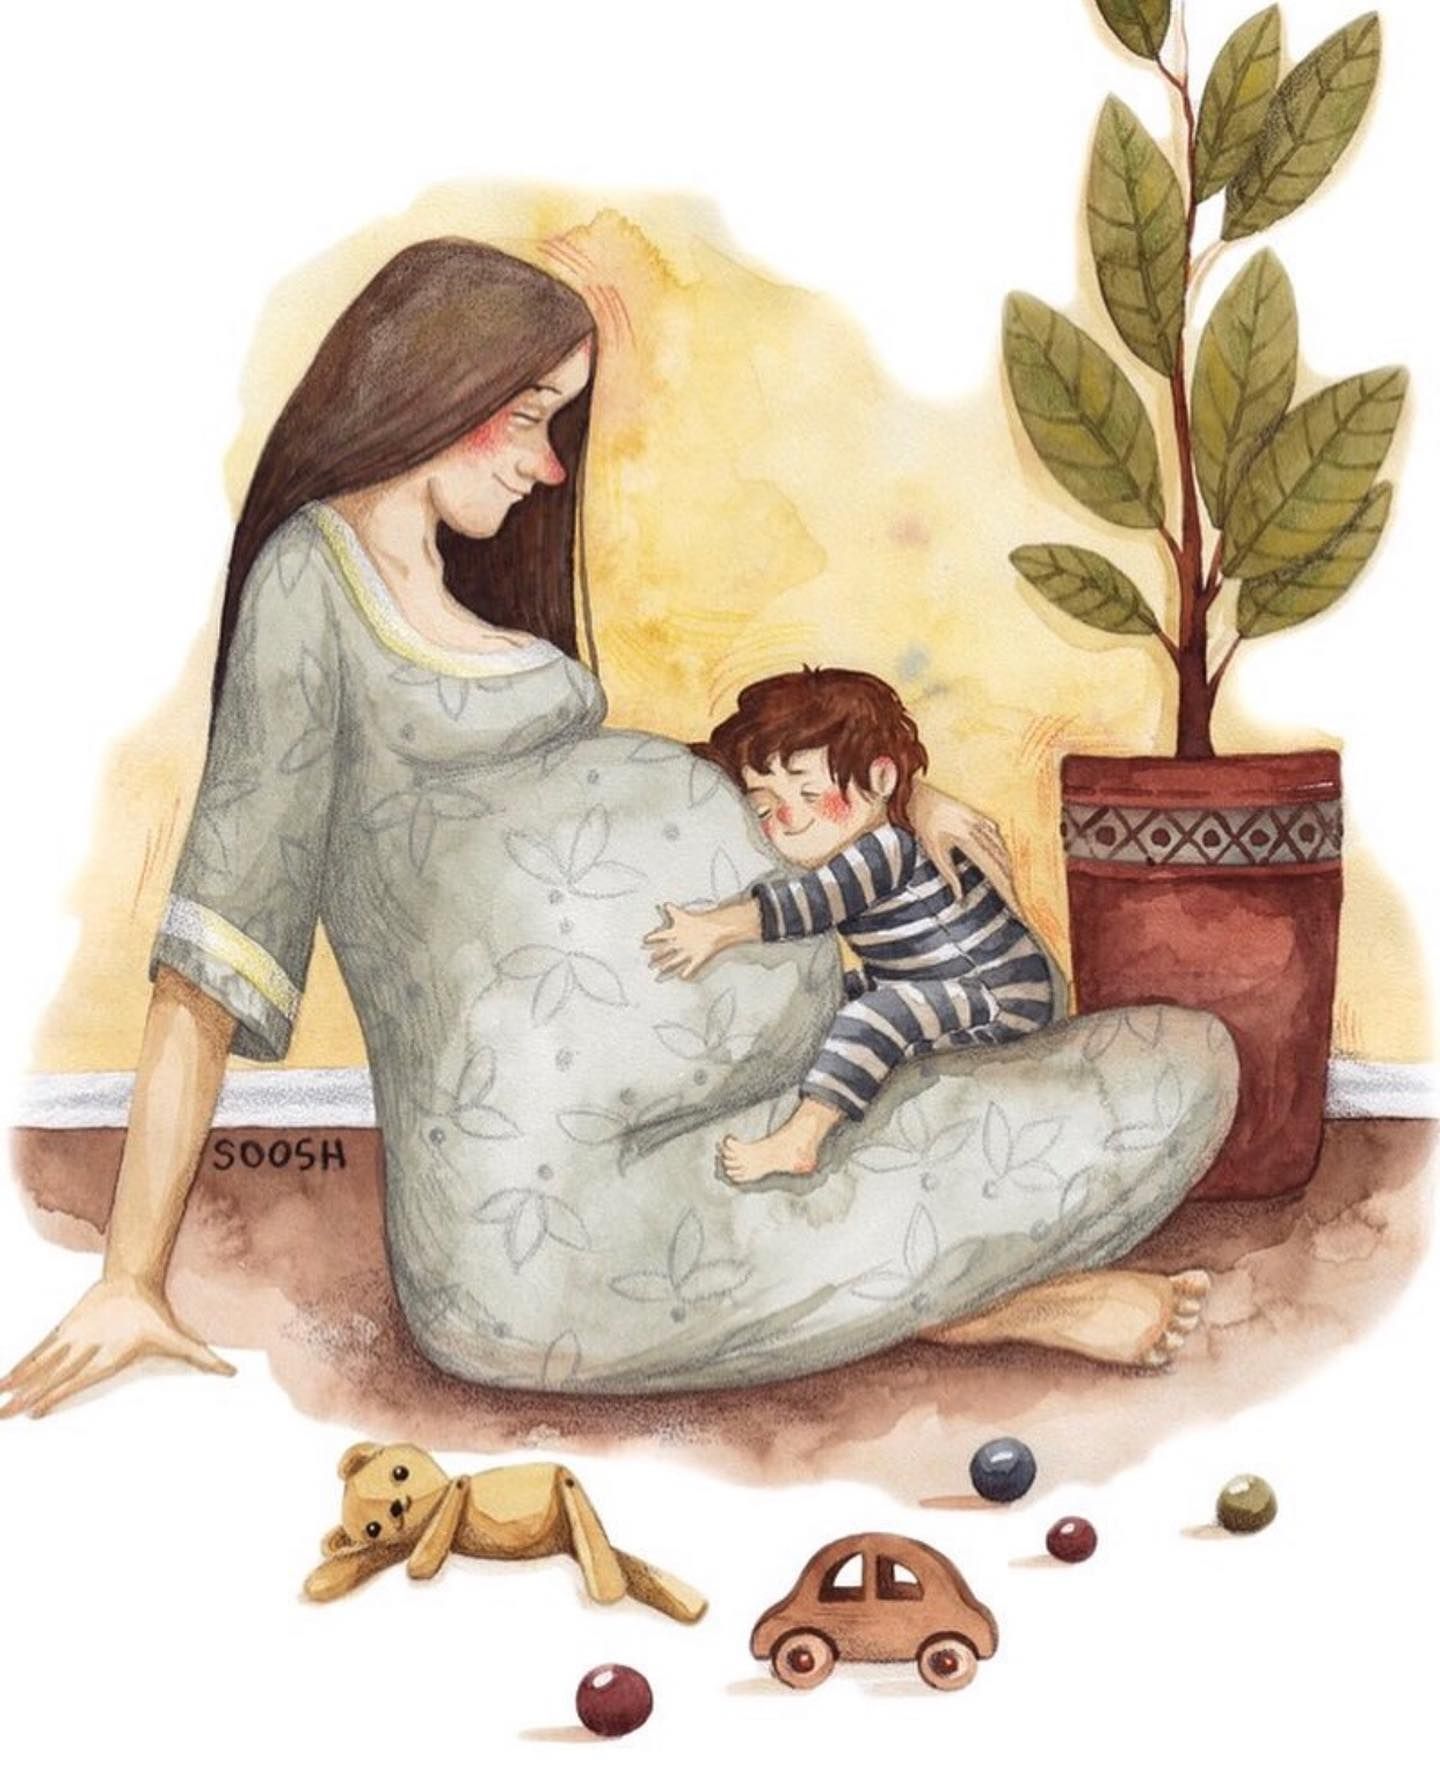 Hình Vẽ Mẹ Và Con Gái Đẹp Tràn Ngập Tình Yêu Thương